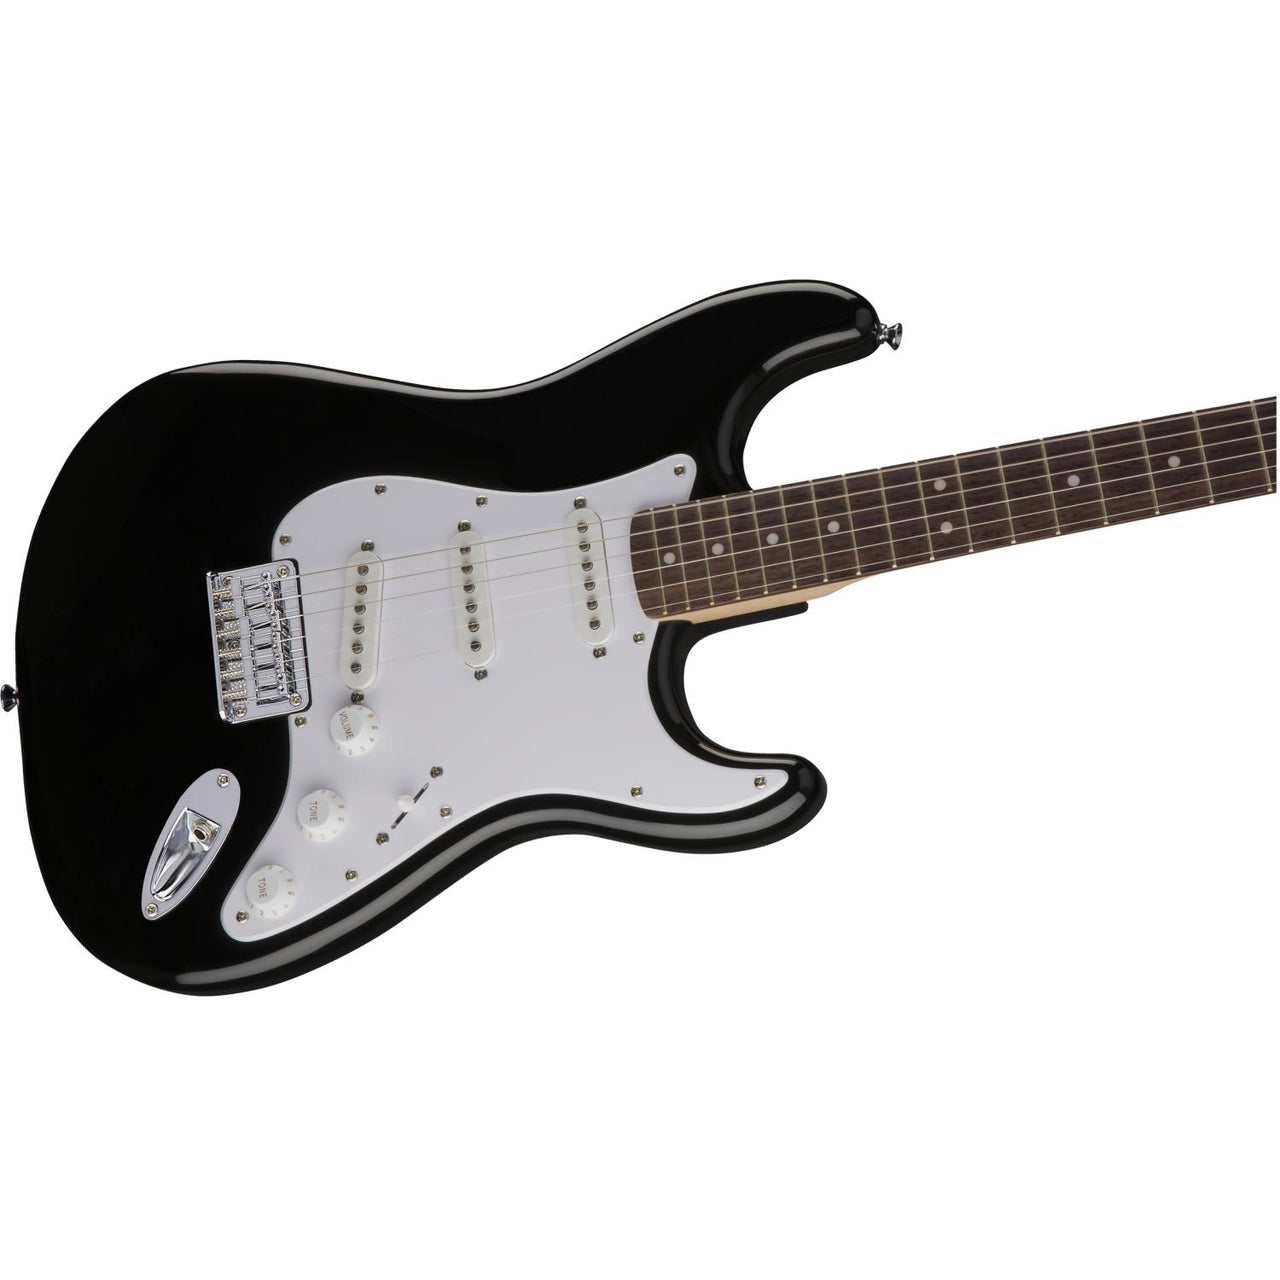 Guitarra Fender Bullet Stratocaster Black Electrica 0371001506